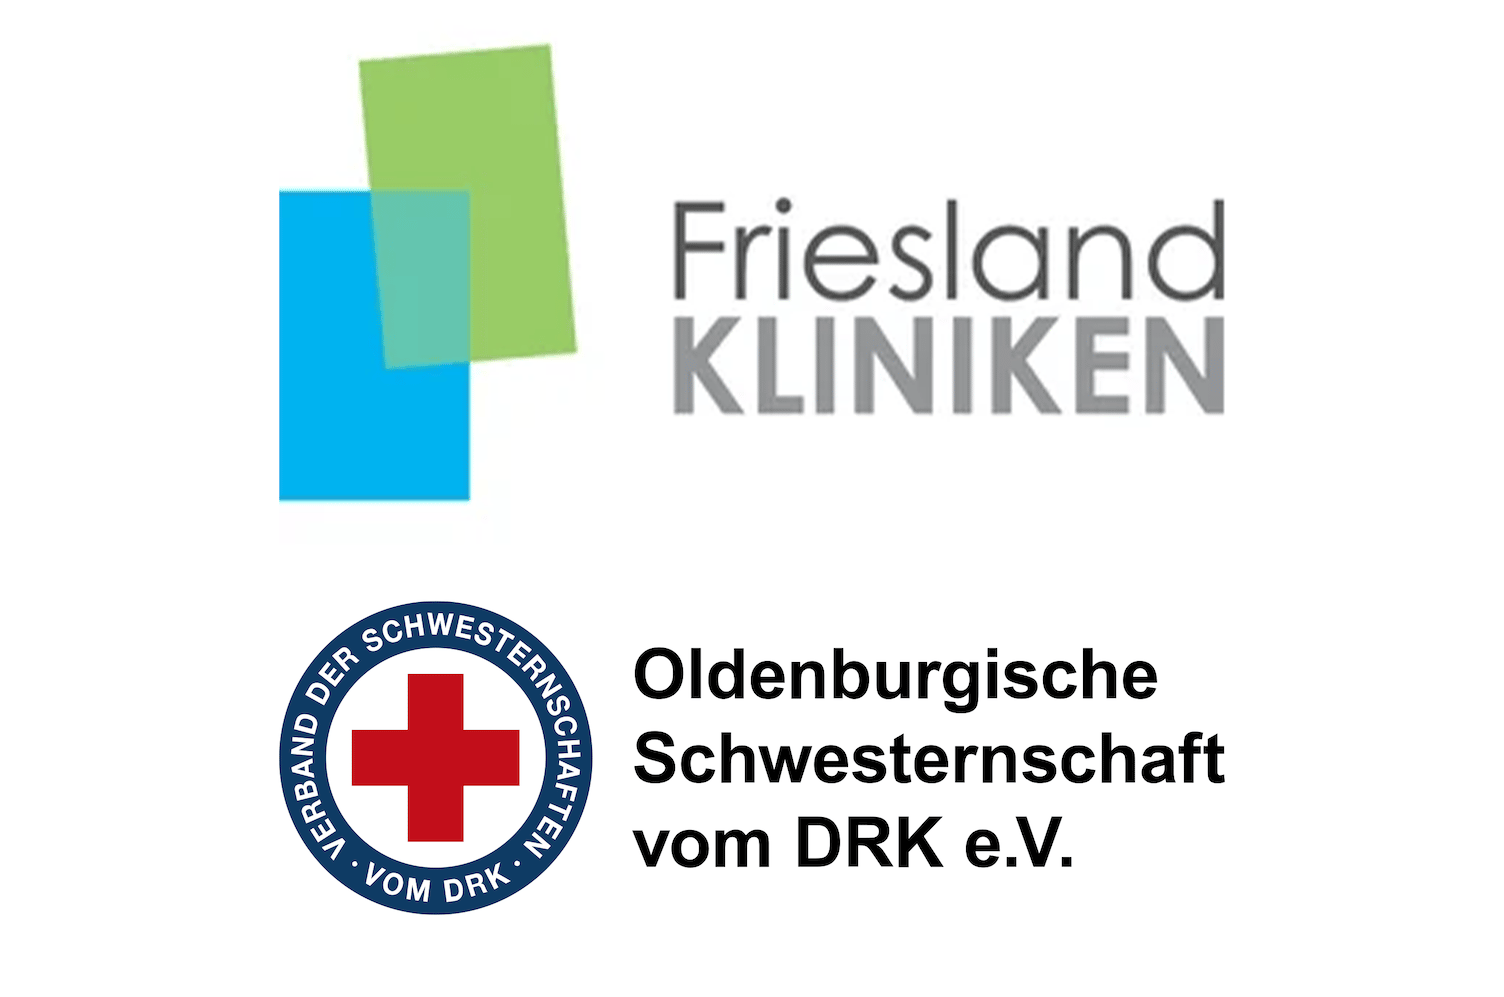 Lease a Bike Dienstradleasing Logo Friesland Kliniken